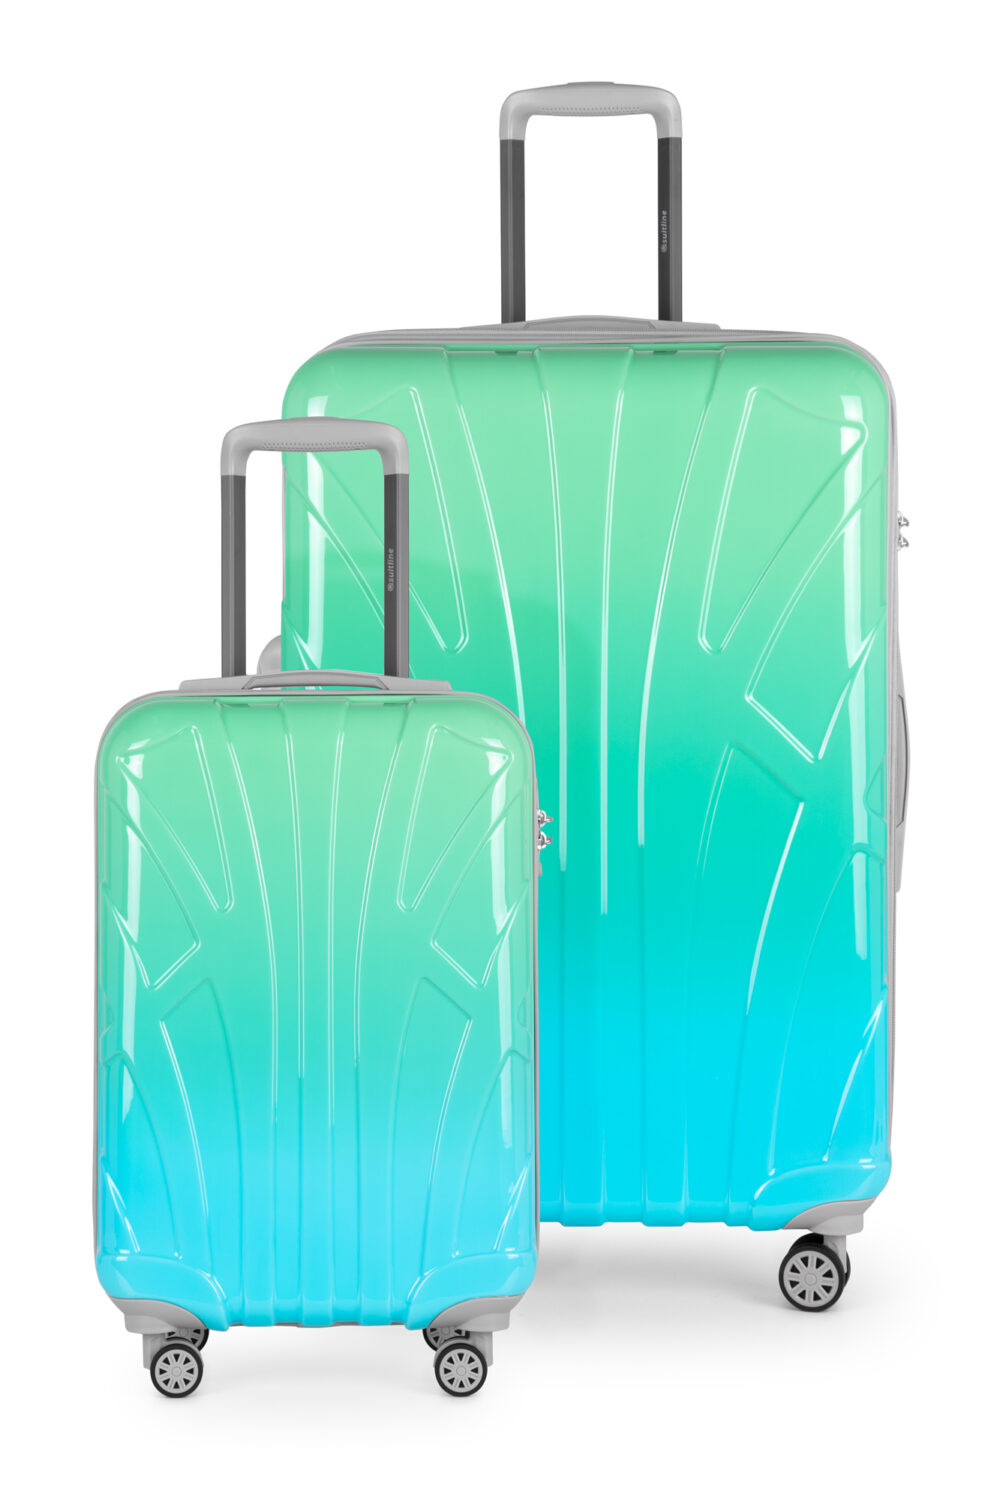 Koffer-Set Damen grün-blau Verlauf, Fashion Trolley Bags